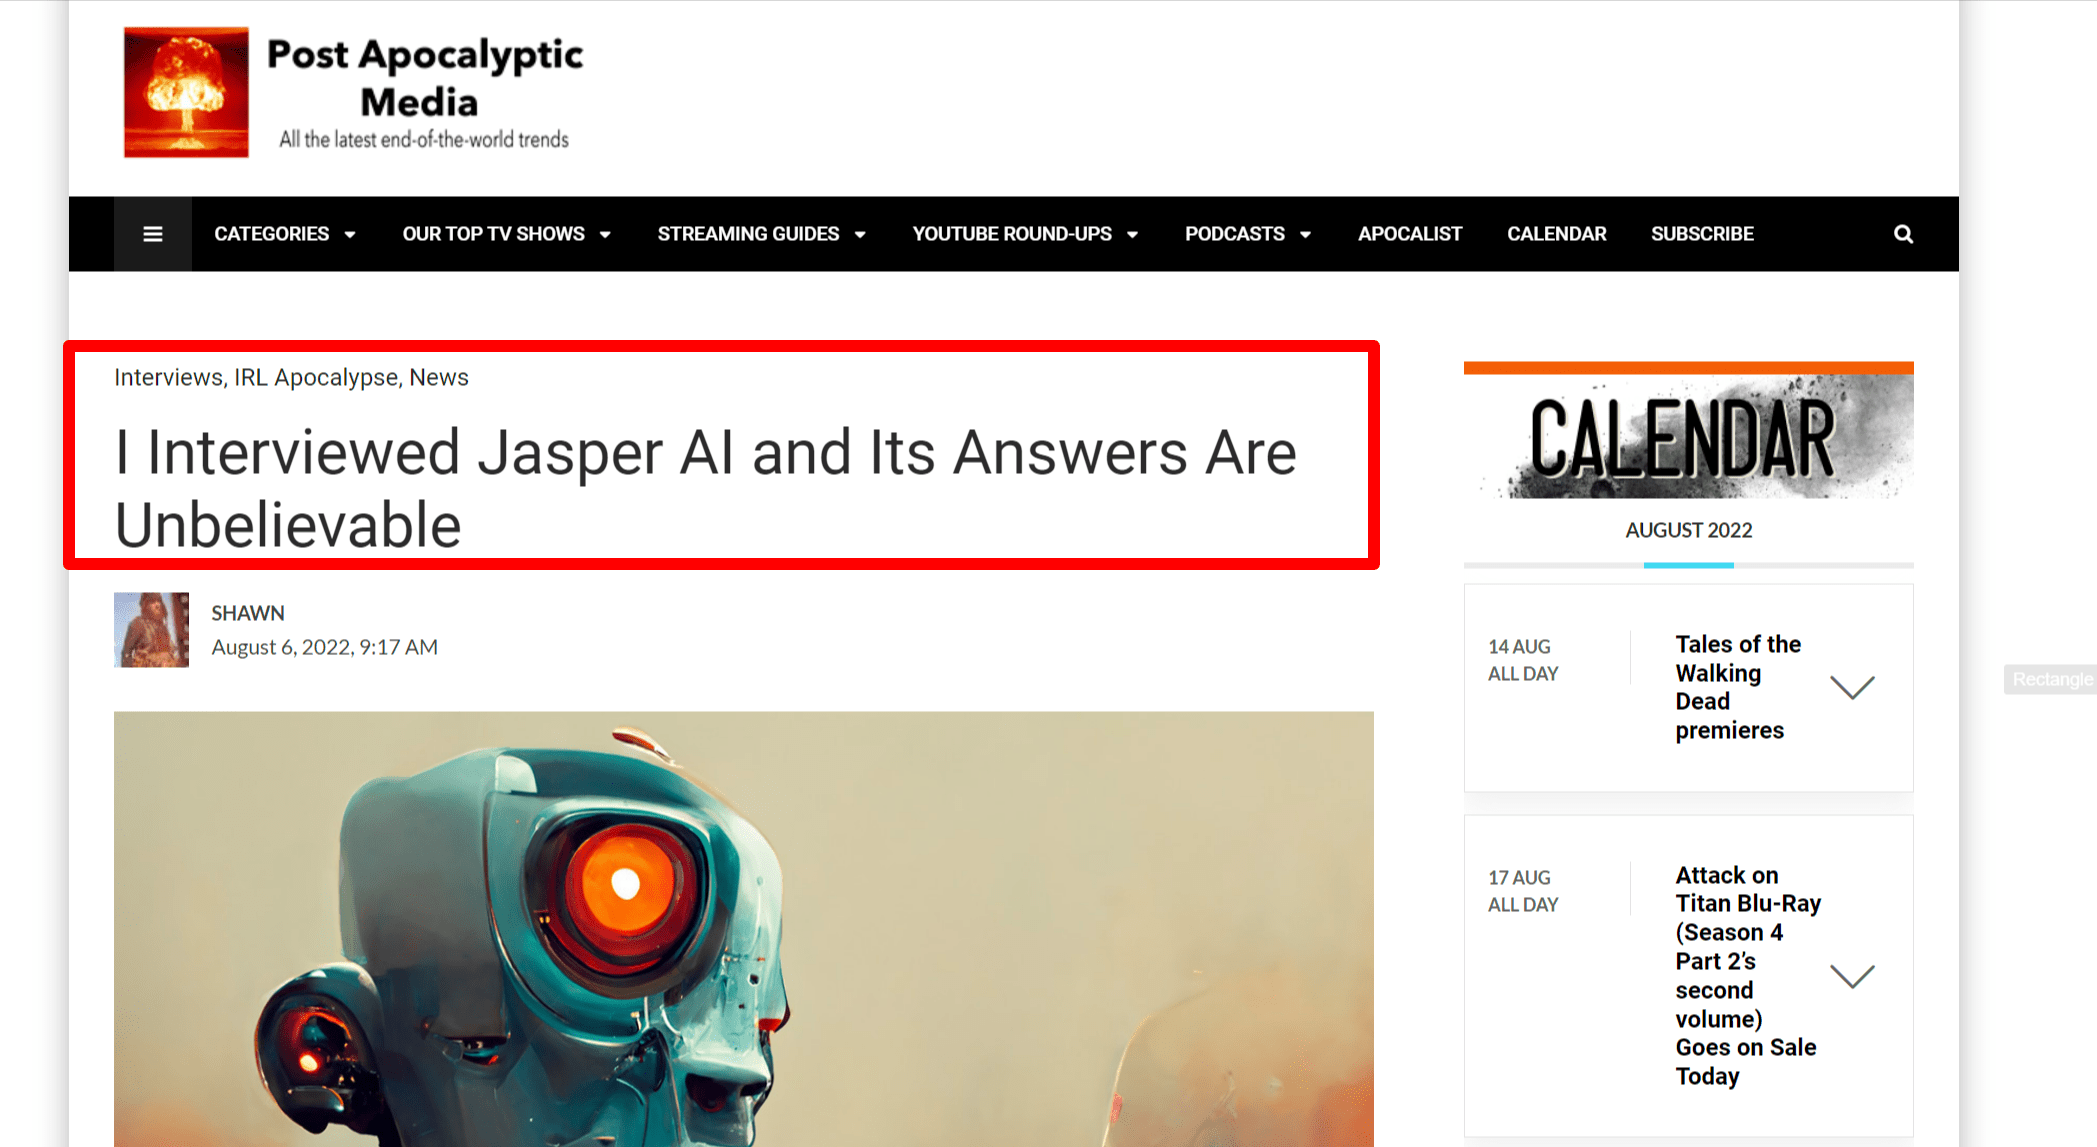 Ho intervistato Jasper AI e le sue risposte sono incredibili